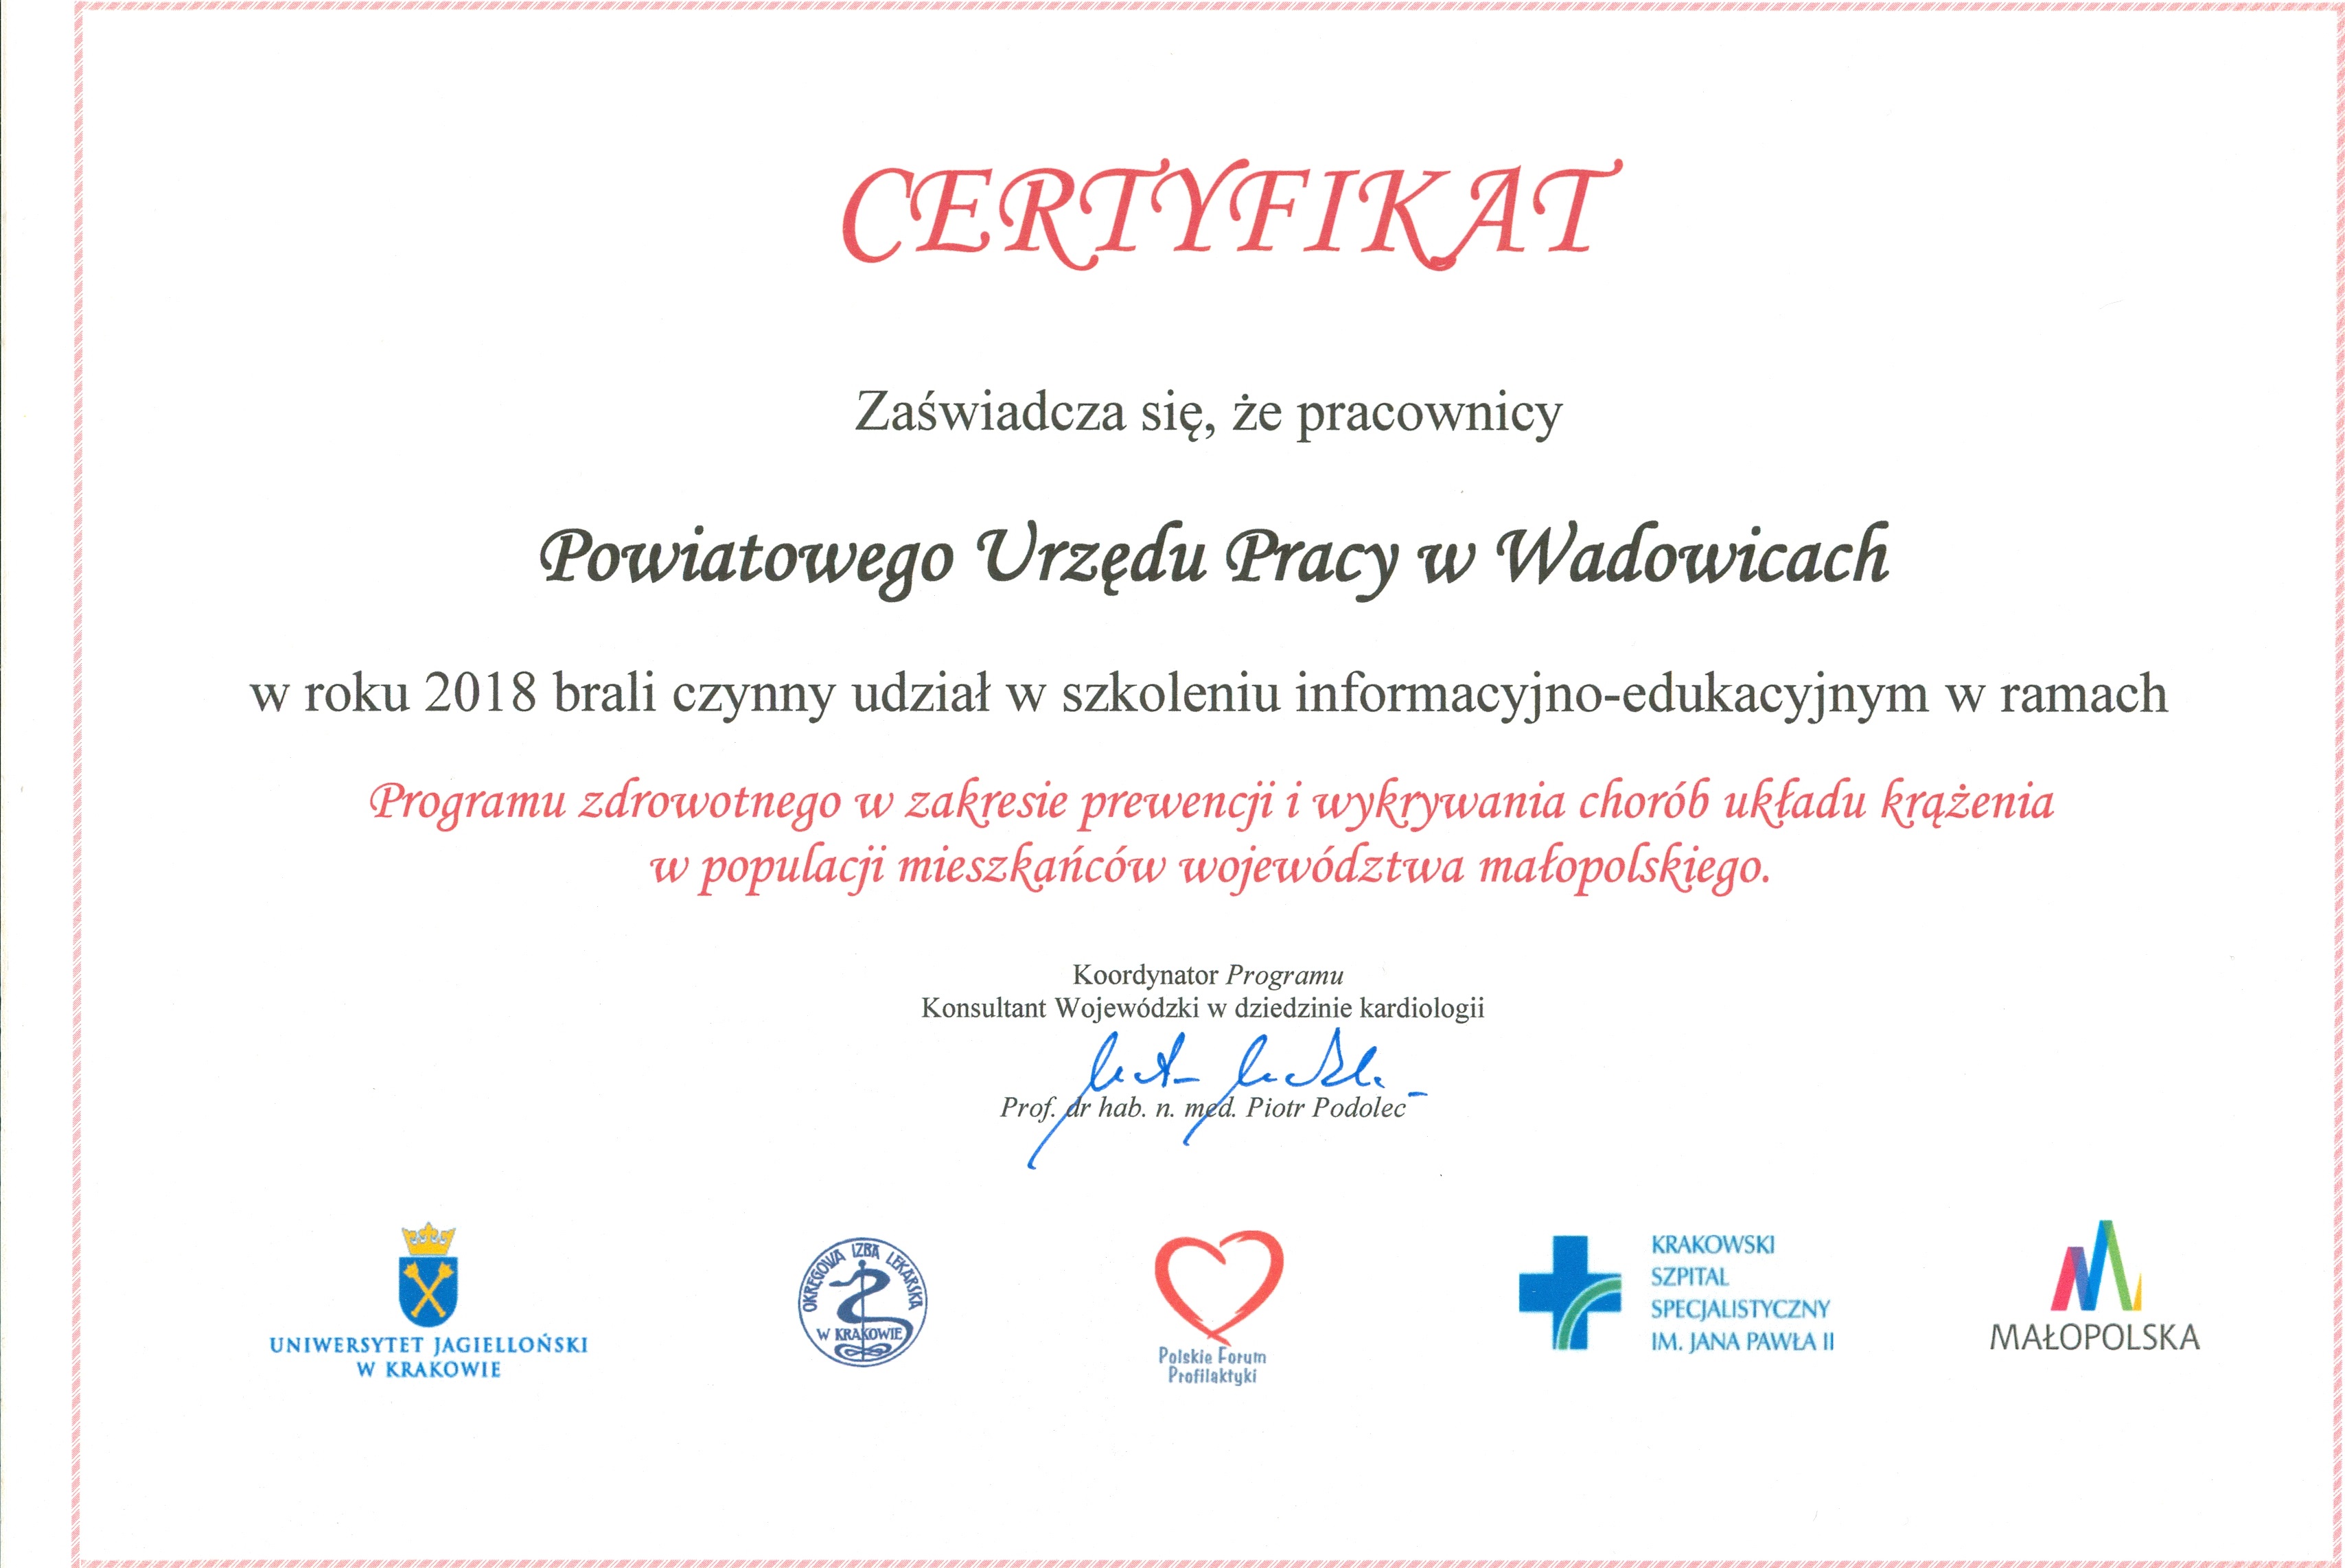 Pracownicy Powiatowego Urzędu Pracy w Wadowicach uczestniczyli w szkoleniu informacyjno-edukacyjnym w ramach programu zdrowotnego w zakresie prewencji i wykrywania chorób układu krążenia